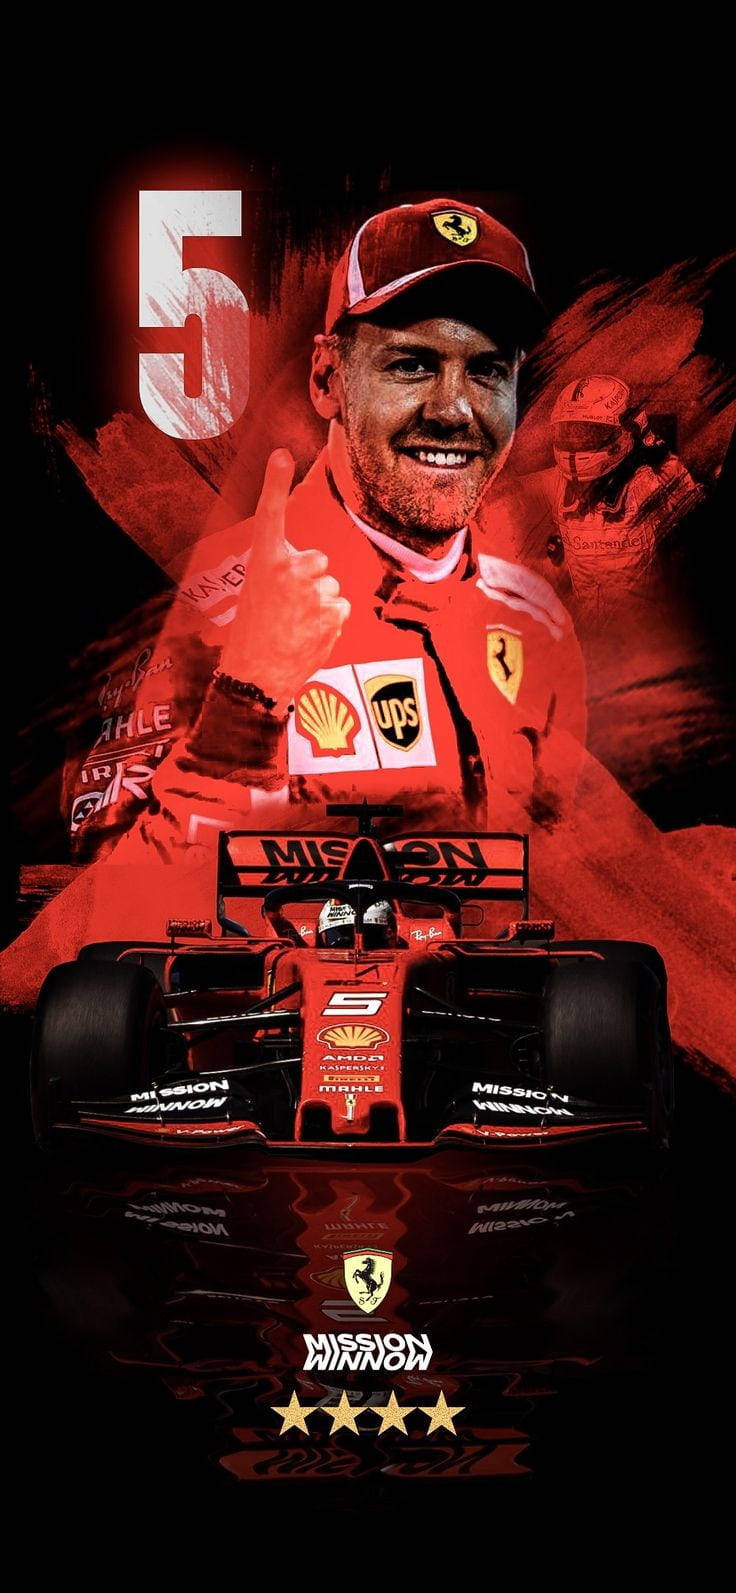 F1 Racer Sebastian Vettel With Car Background